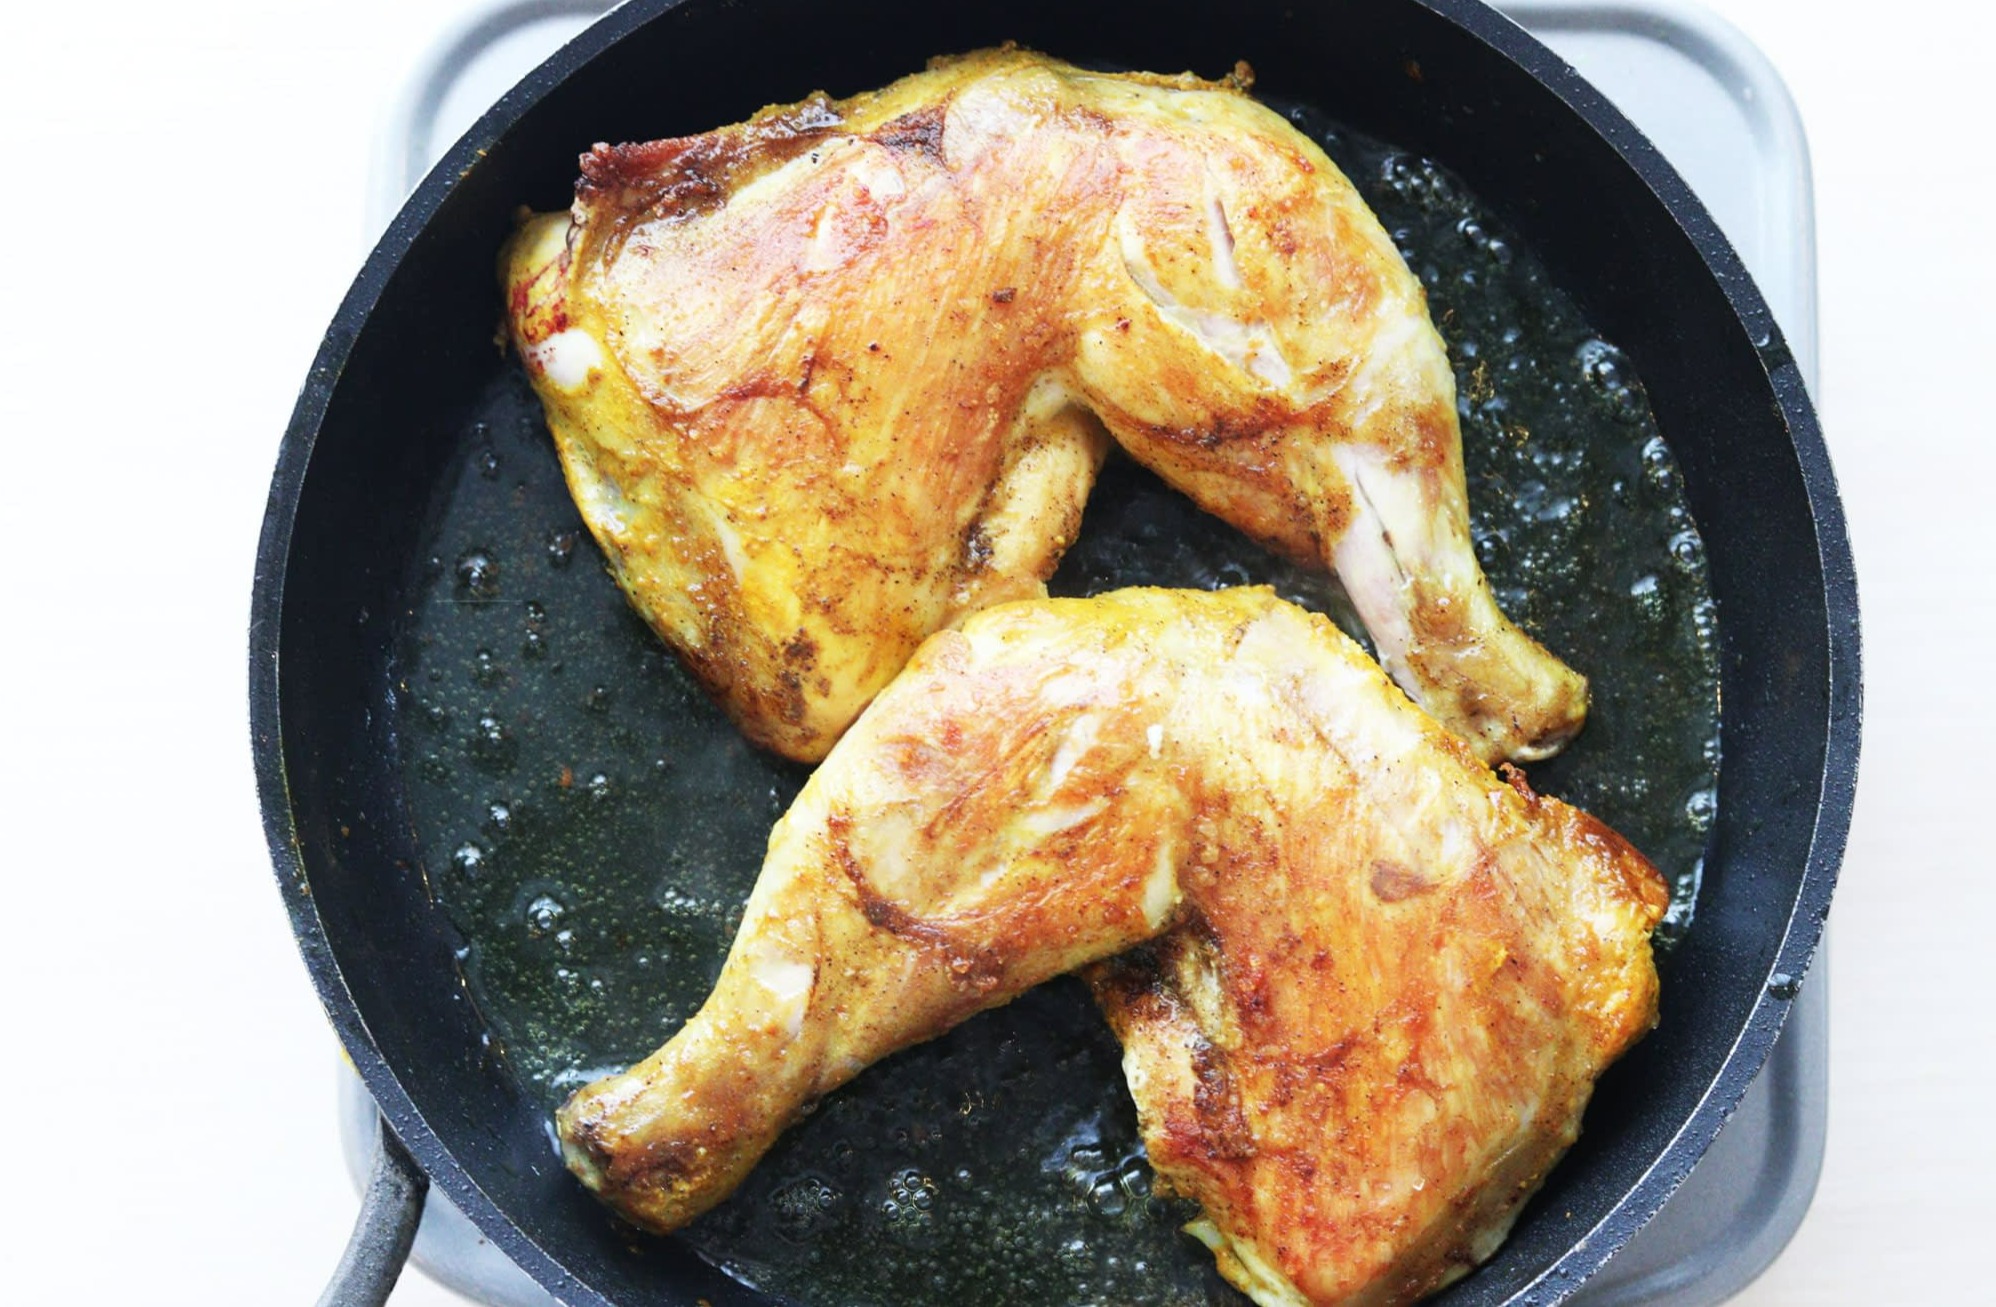 سرخ کردن مرغ - دستور پخت مرغ